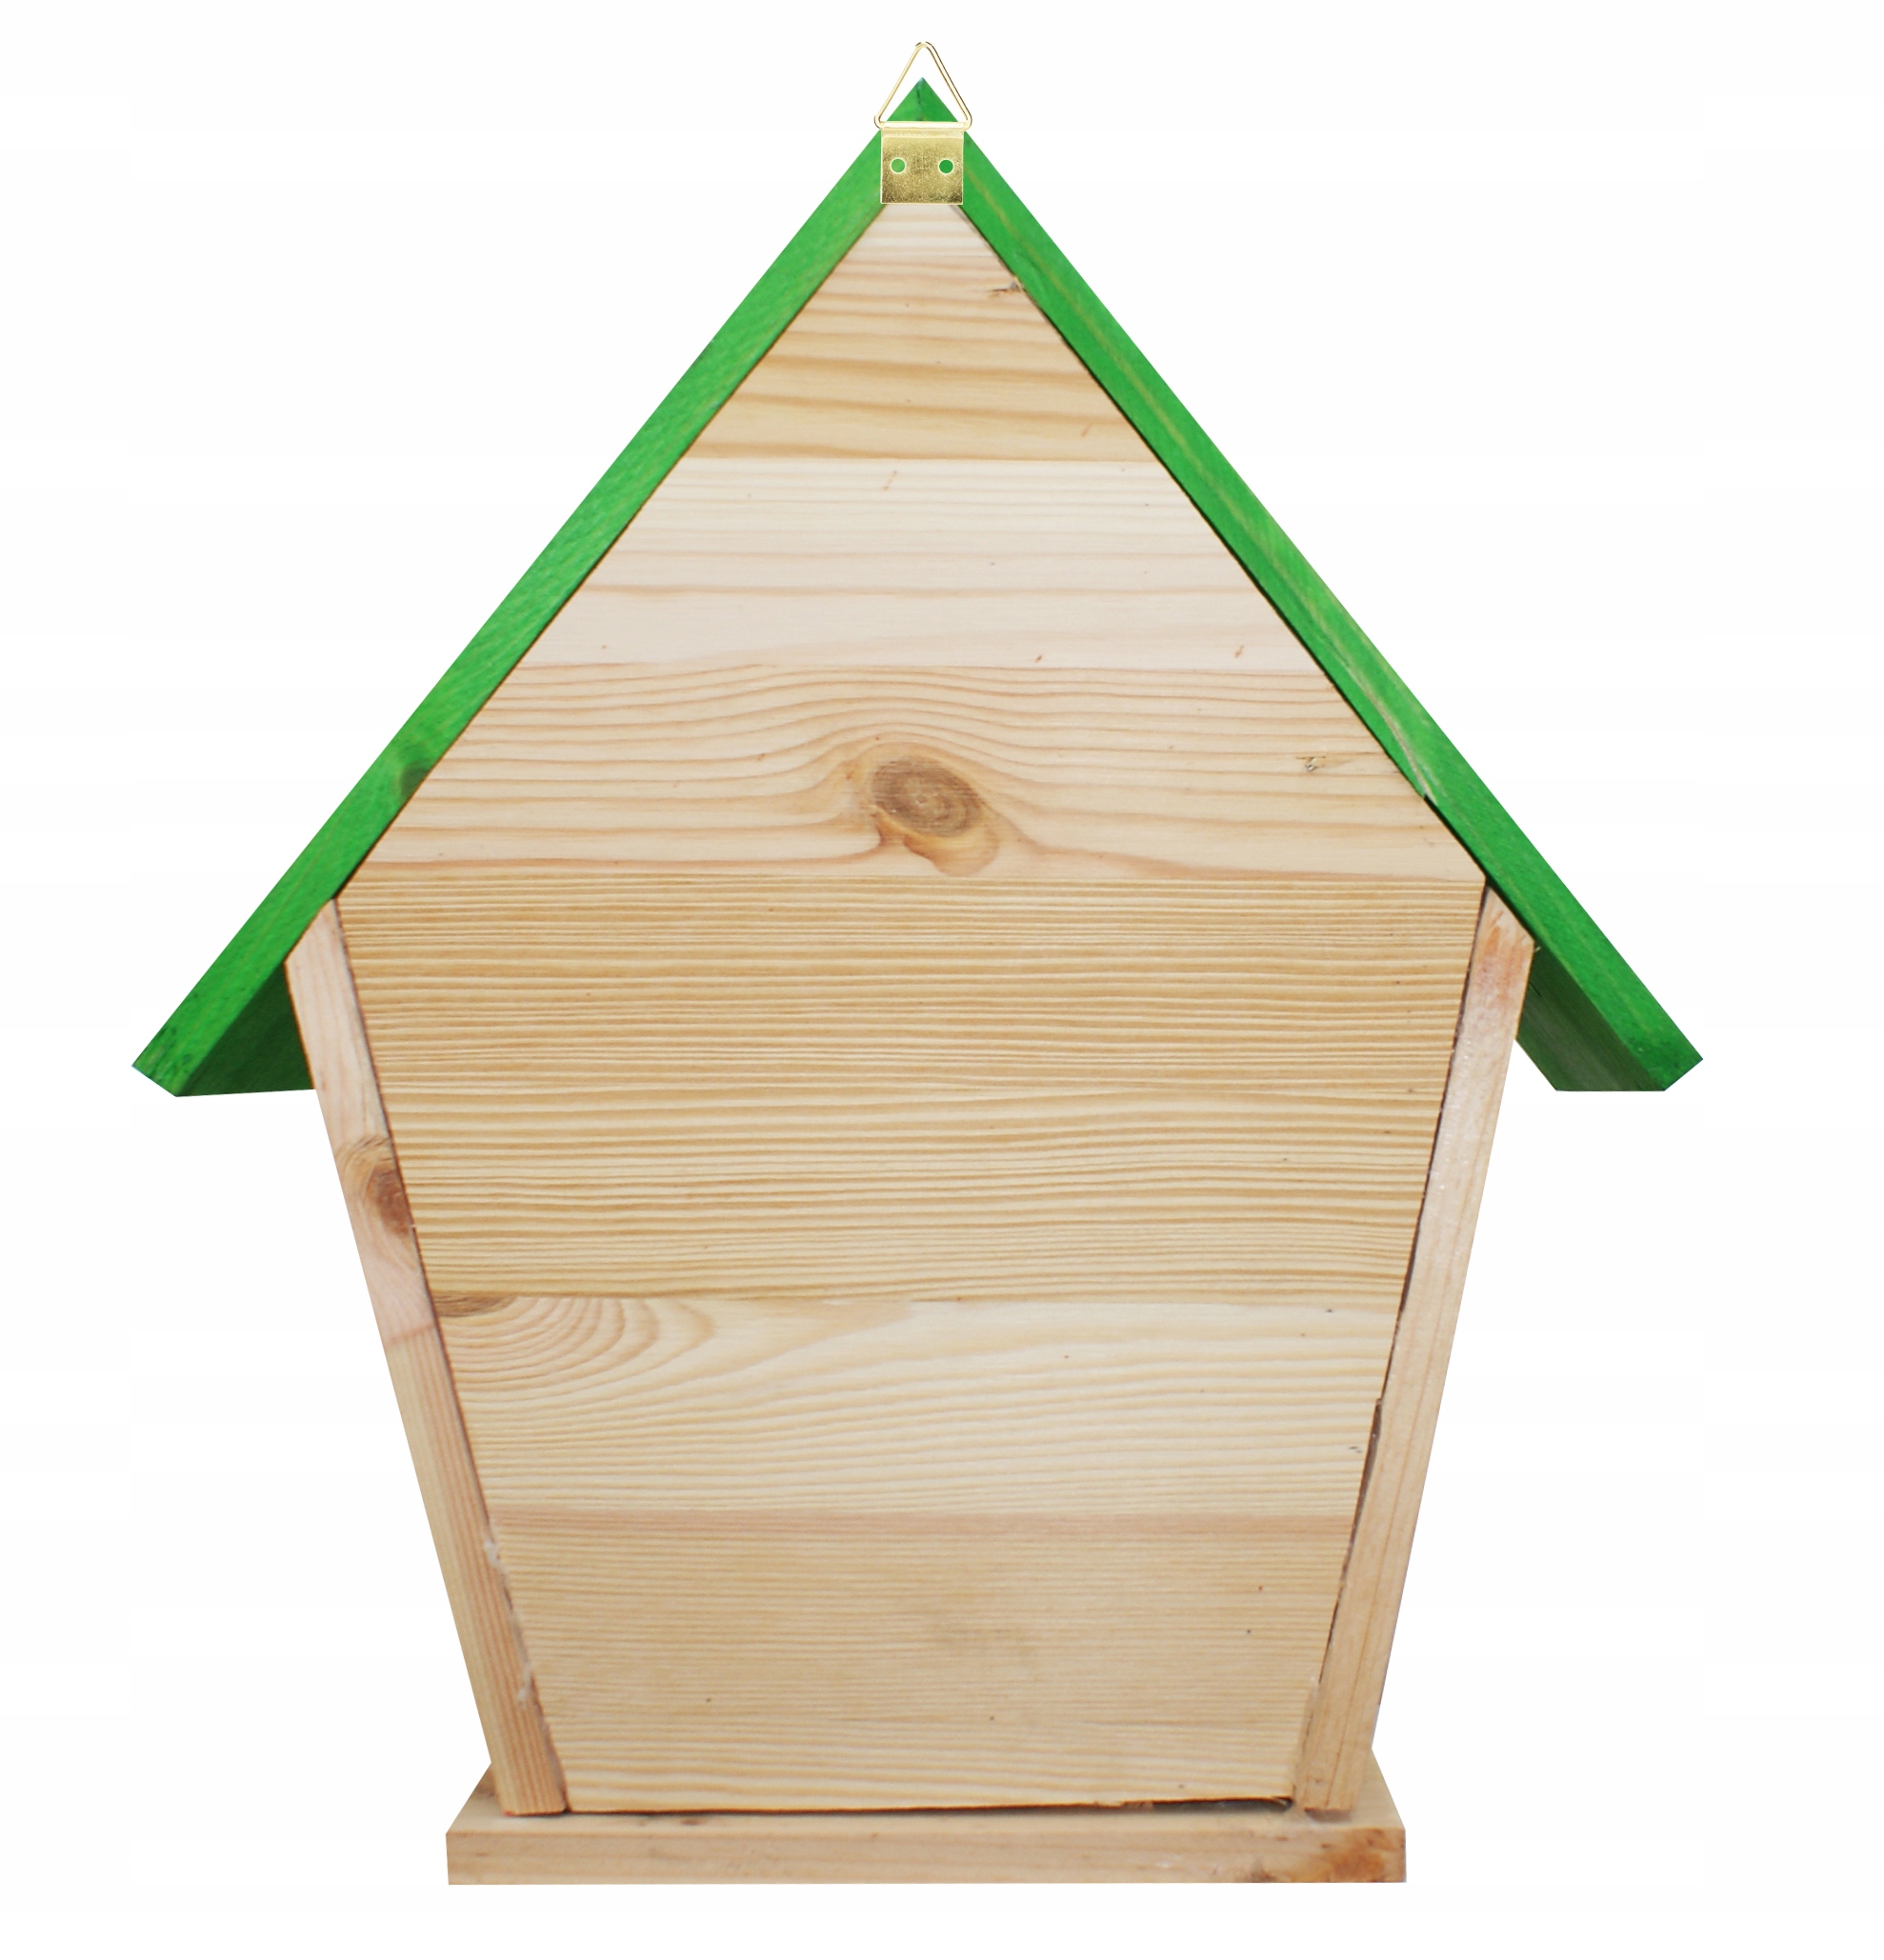 Duży domek dla pszczół murarka pożytecznych owadów z drewna Produkt Polski Producent inna